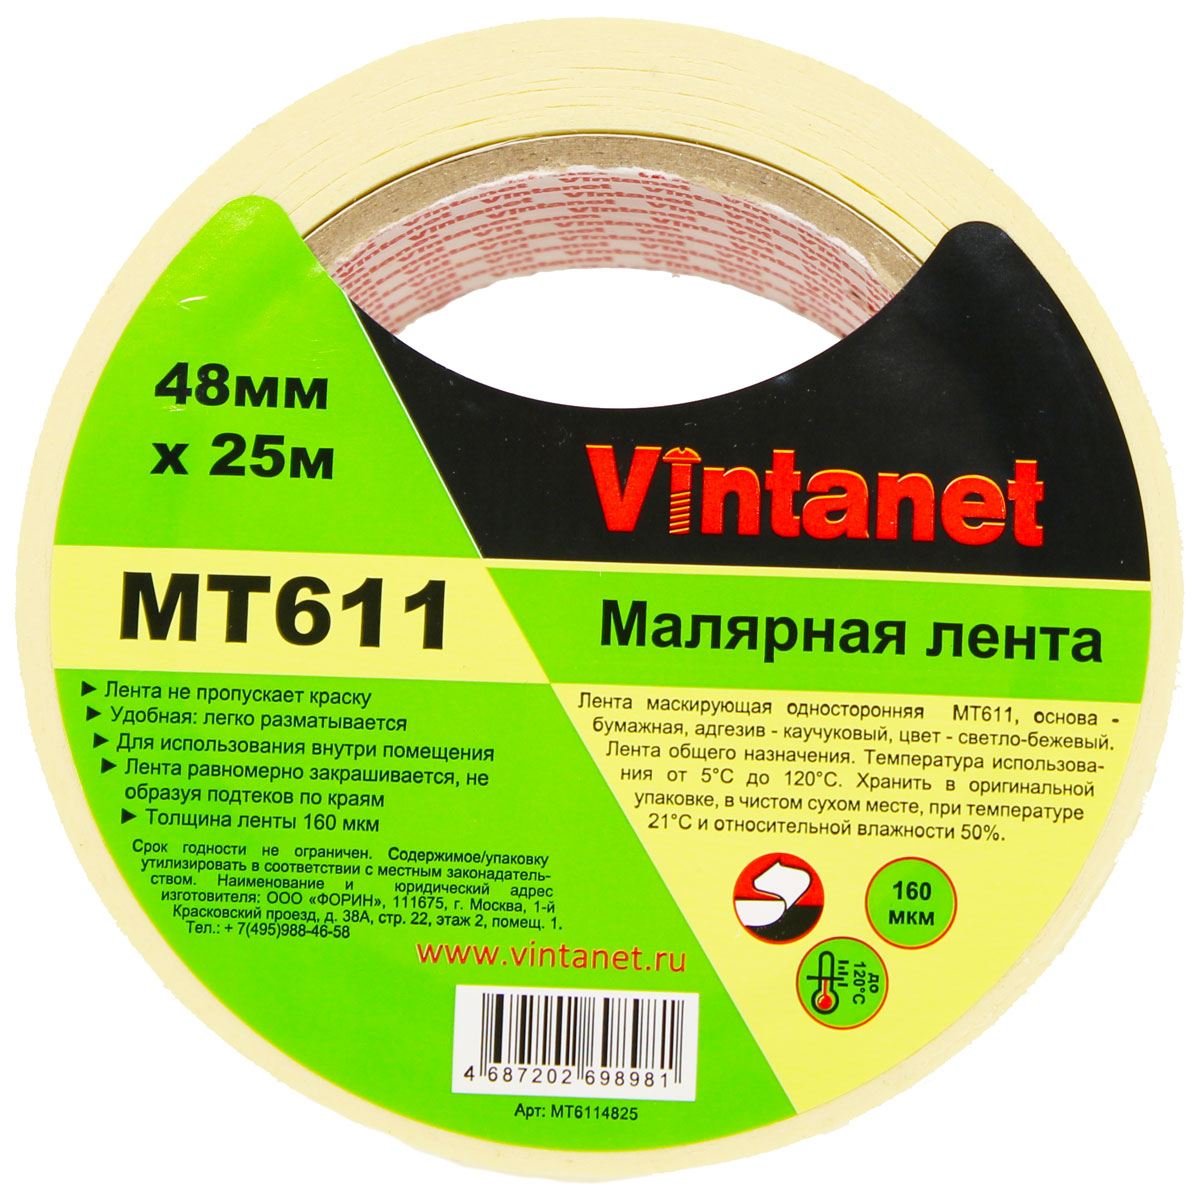 Лента малярная высокотемпературная Vintanet MT611, 120 С, 160 мкм, 48мм х 25м, MT6114825 малярная лента для деликатных поверхностей unibob